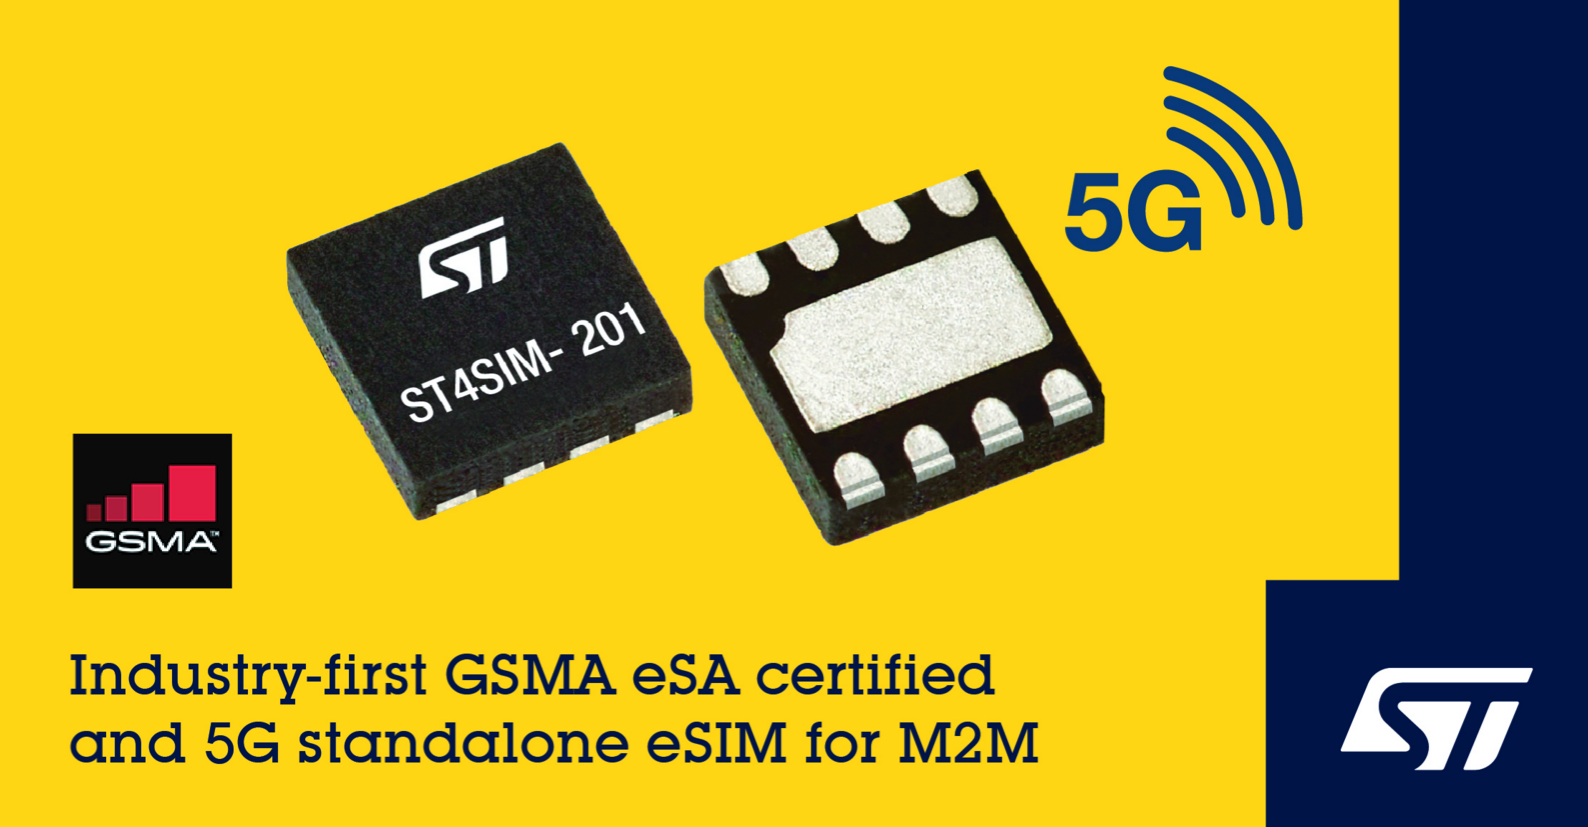 意法半导体5G M2M 嵌入式SIM卡芯片通过最新GSMA eSA(安全保障)认证 